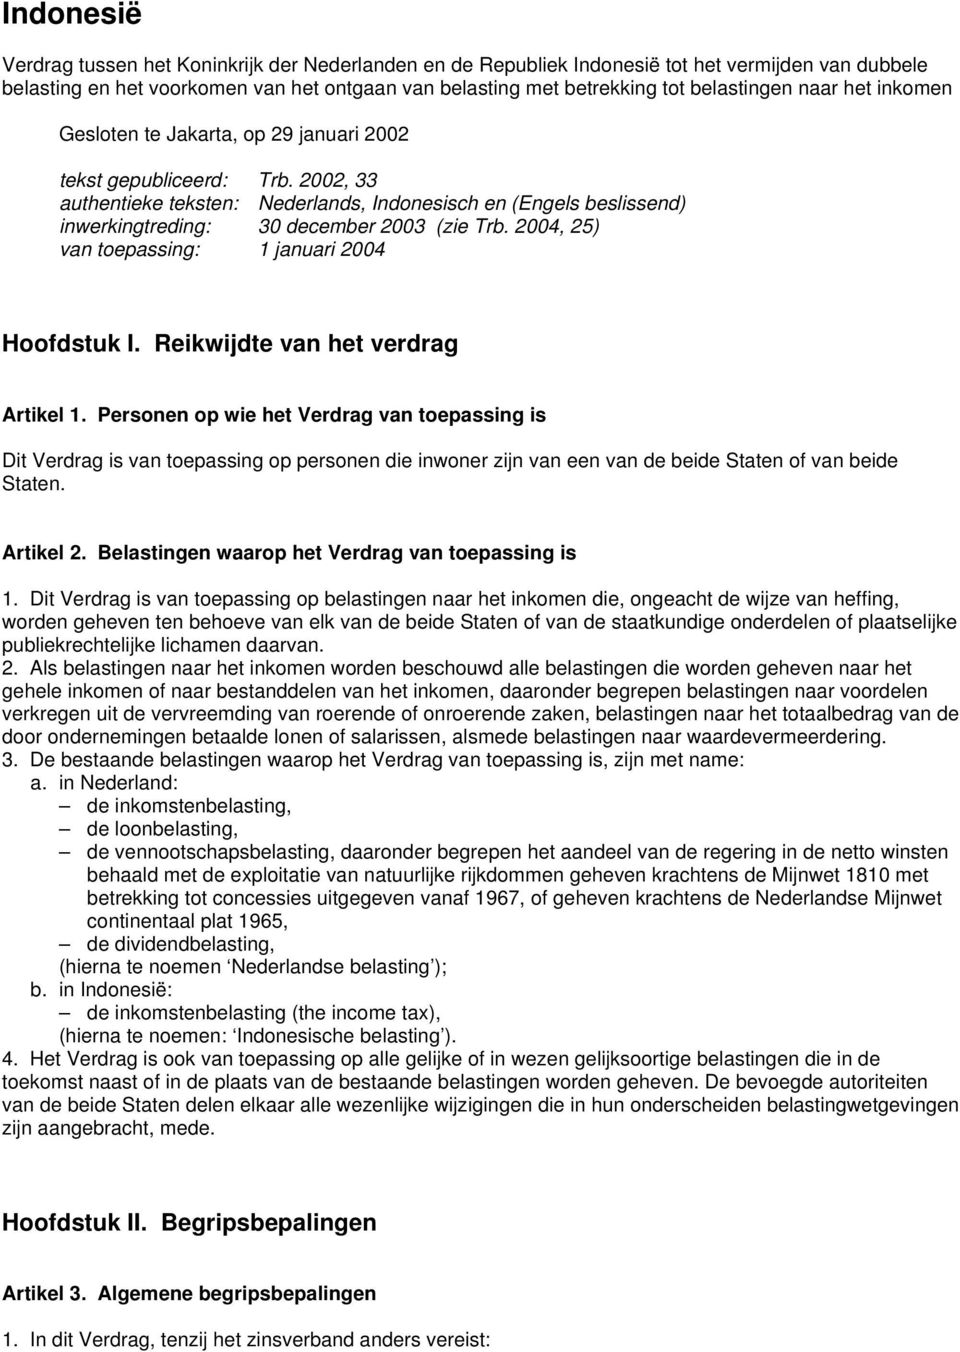 2002, 33 authentieke teksten: Nederlands, Indonesisch en (Engels beslissend) inwerkingtreding: 30 december 2003 (zie Trb. 2004, 25) van toepassing: 1 januari 2004 Hoofdstuk I.